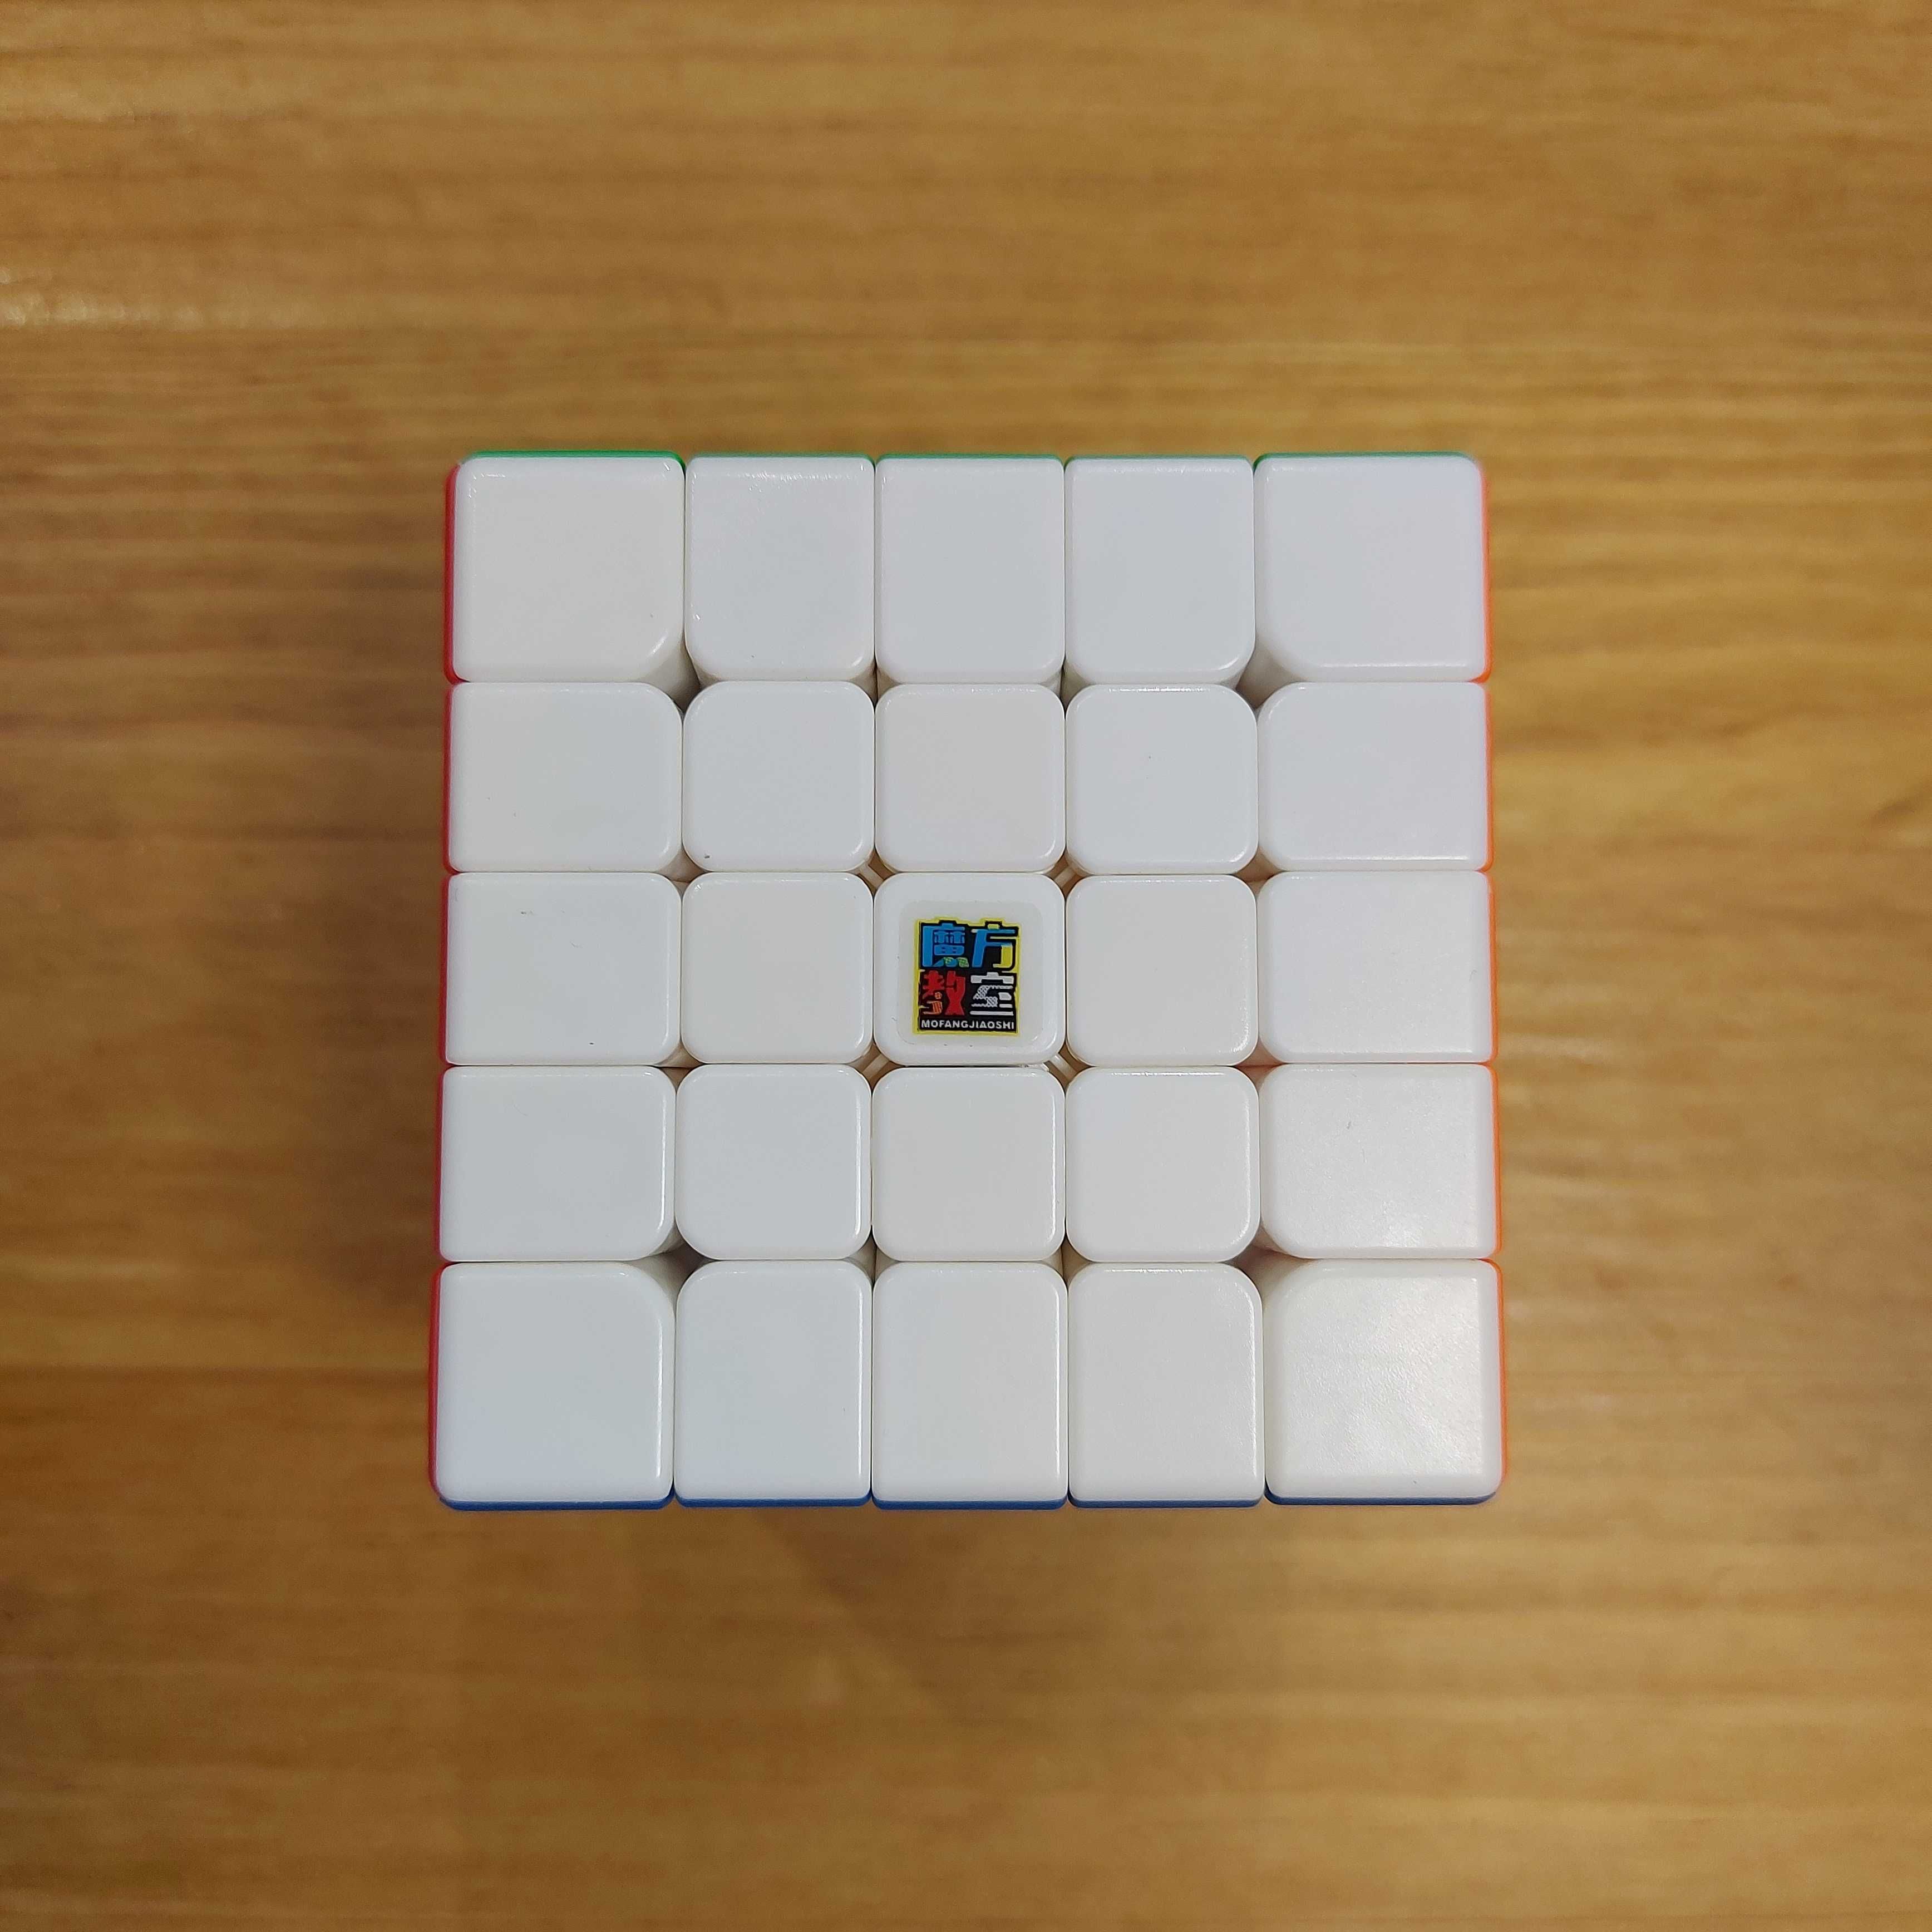 Магнитный Кубик 5 на 5 MoYu Meilong 5M. Головоломка. Magnetic color.